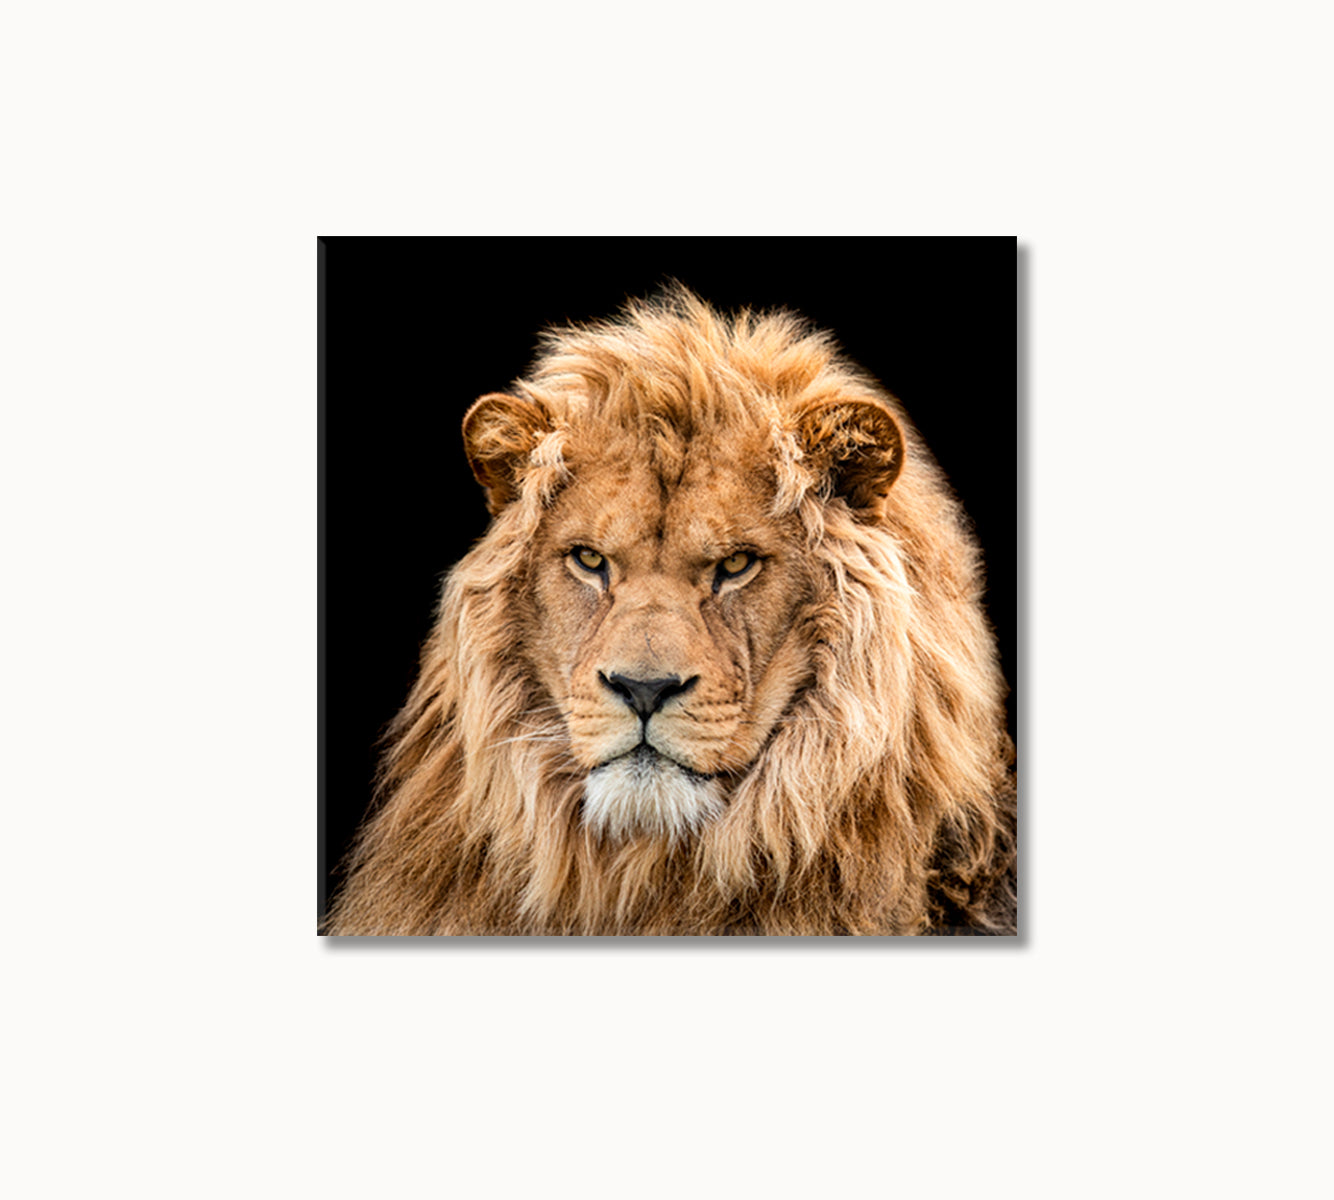 Portrait of Lion Canvas Print-Canvas Print-CetArt-1 panel-12x12 inches-CetArt